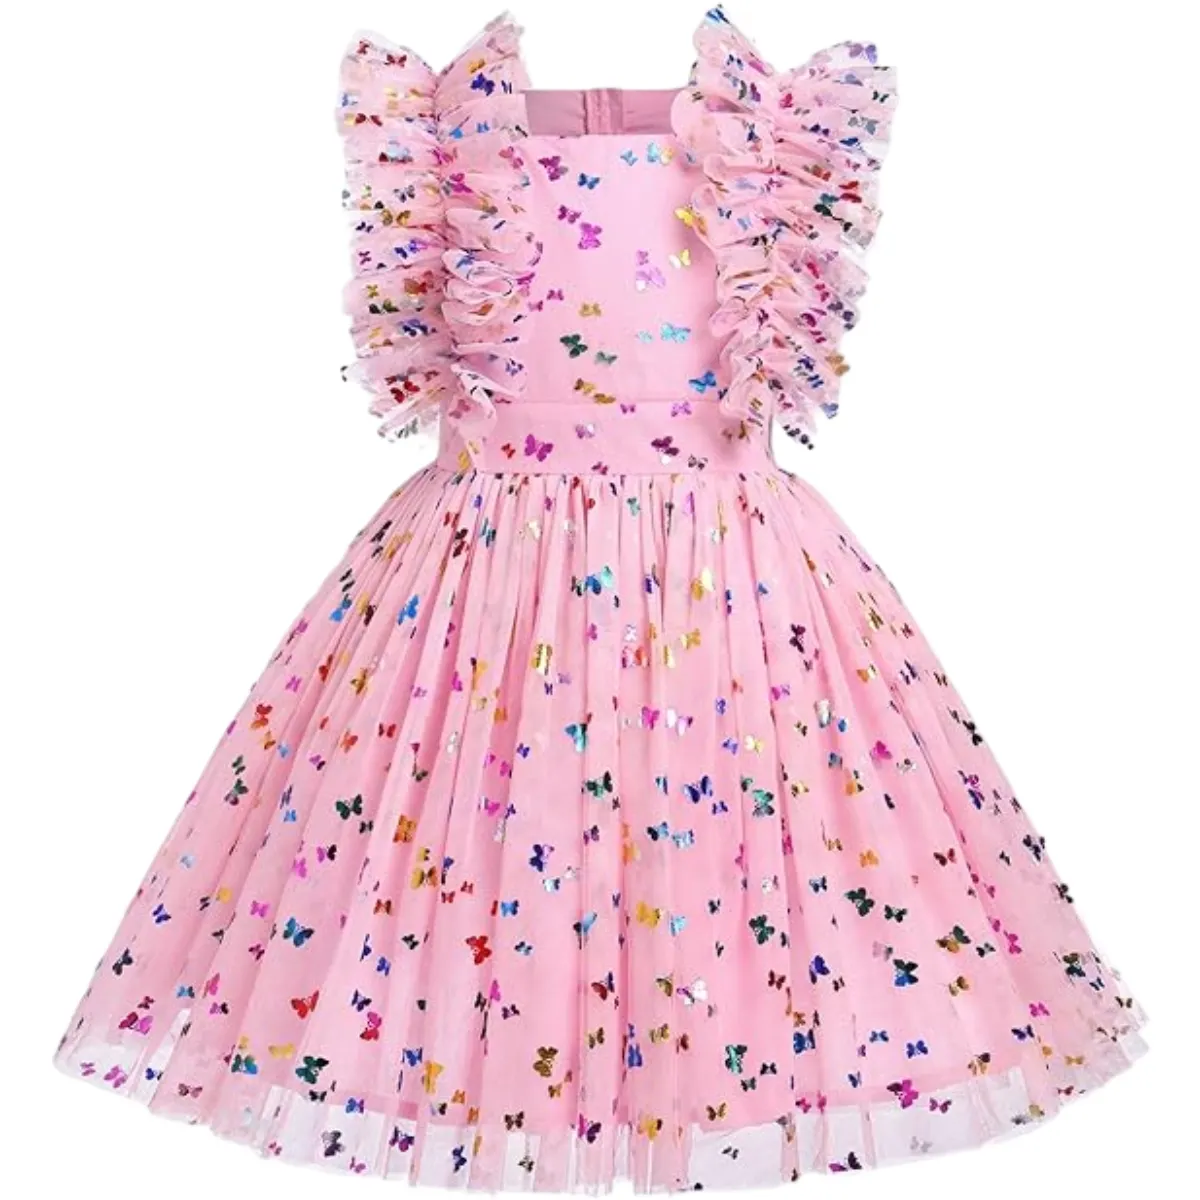 Дизайн на заказ бабочка фольга печать оборки рукава розовый тюль платье